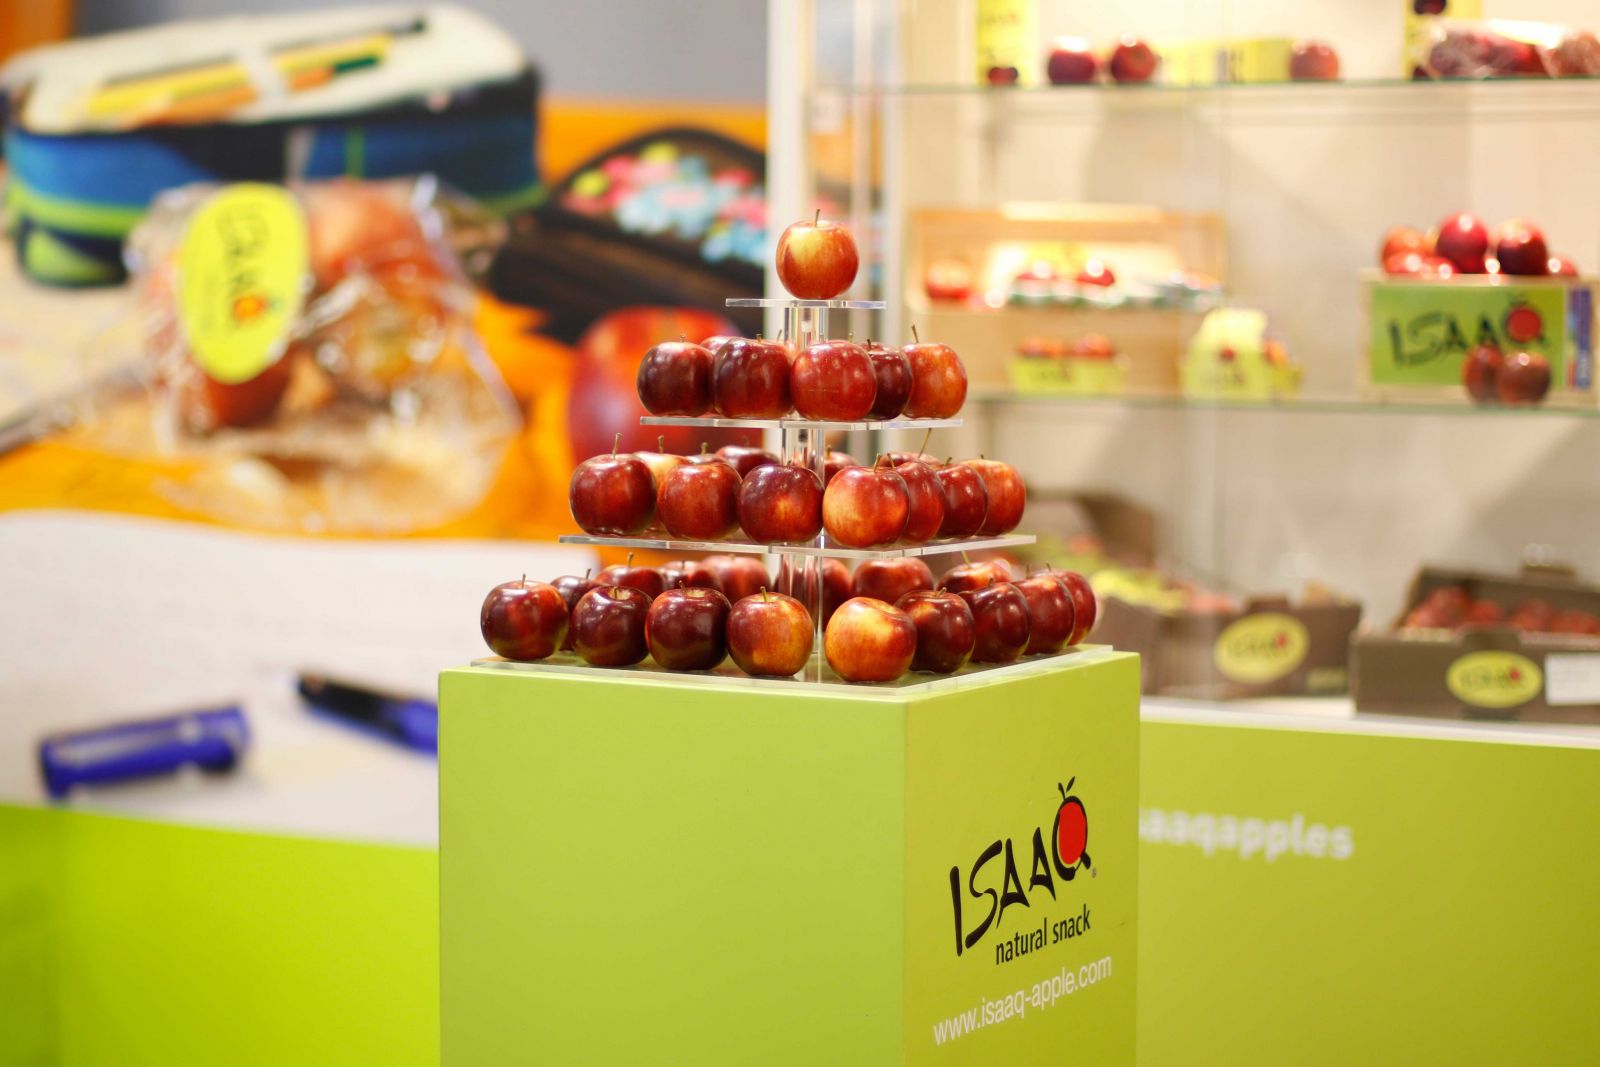 ISAAQ apples display